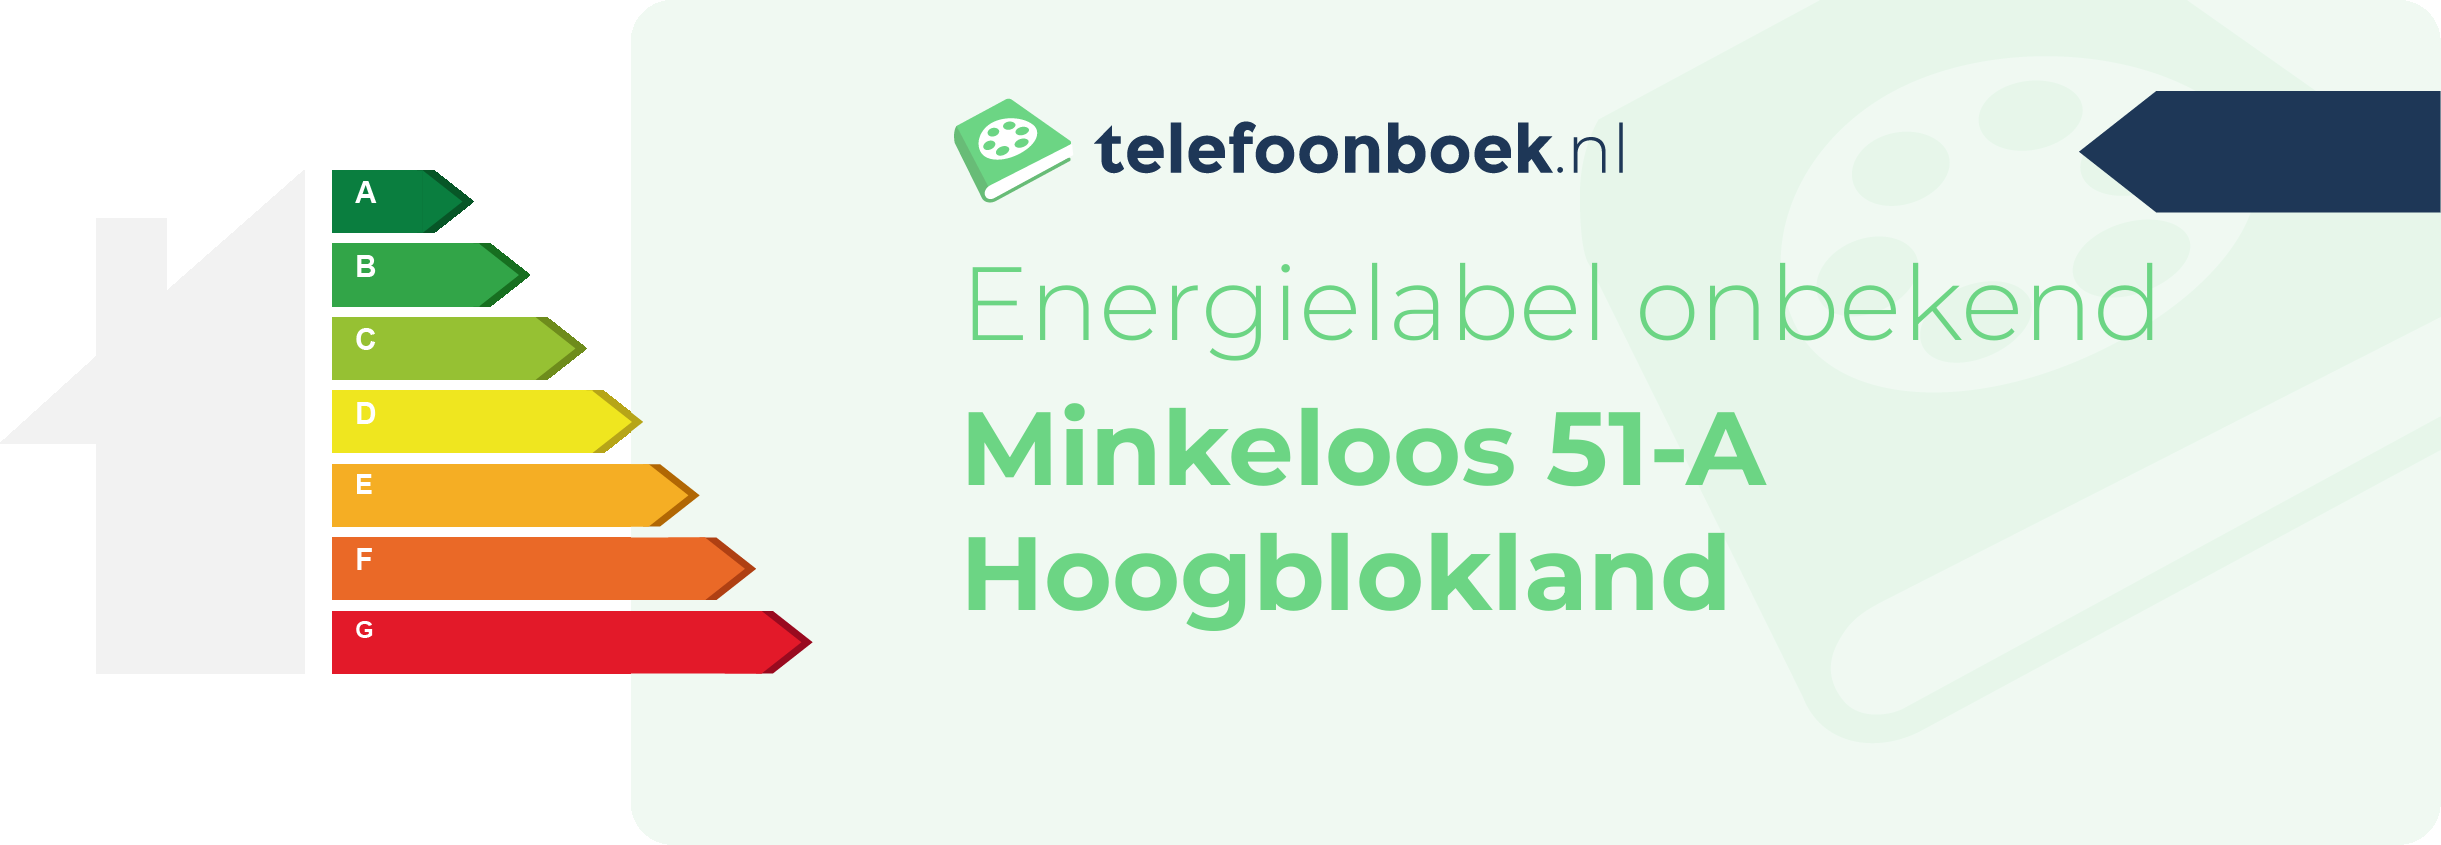 Energielabel Minkeloos 51-A Hoogblokland